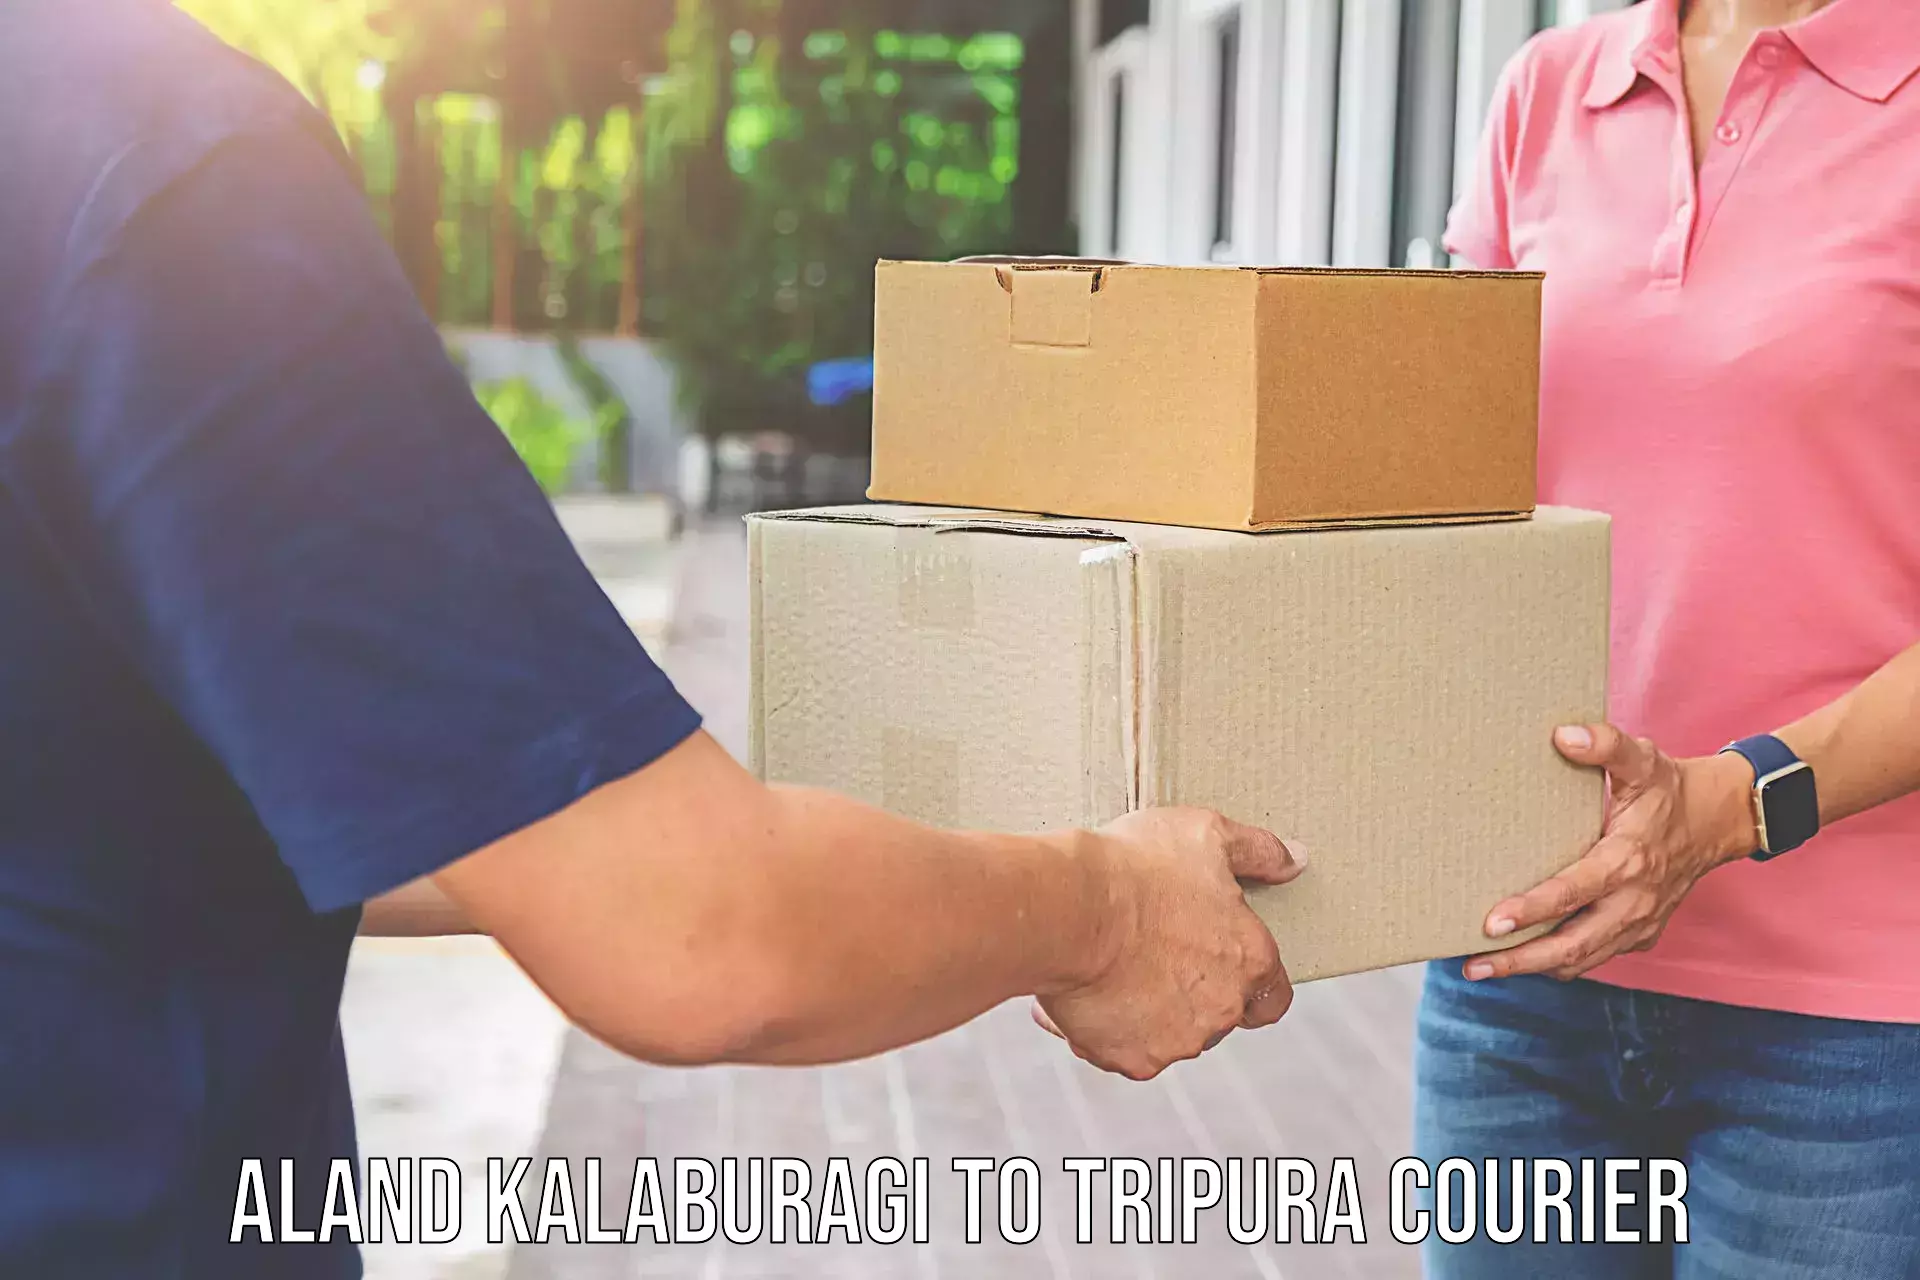 Furniture transport and logistics Aland Kalaburagi to Kailashahar